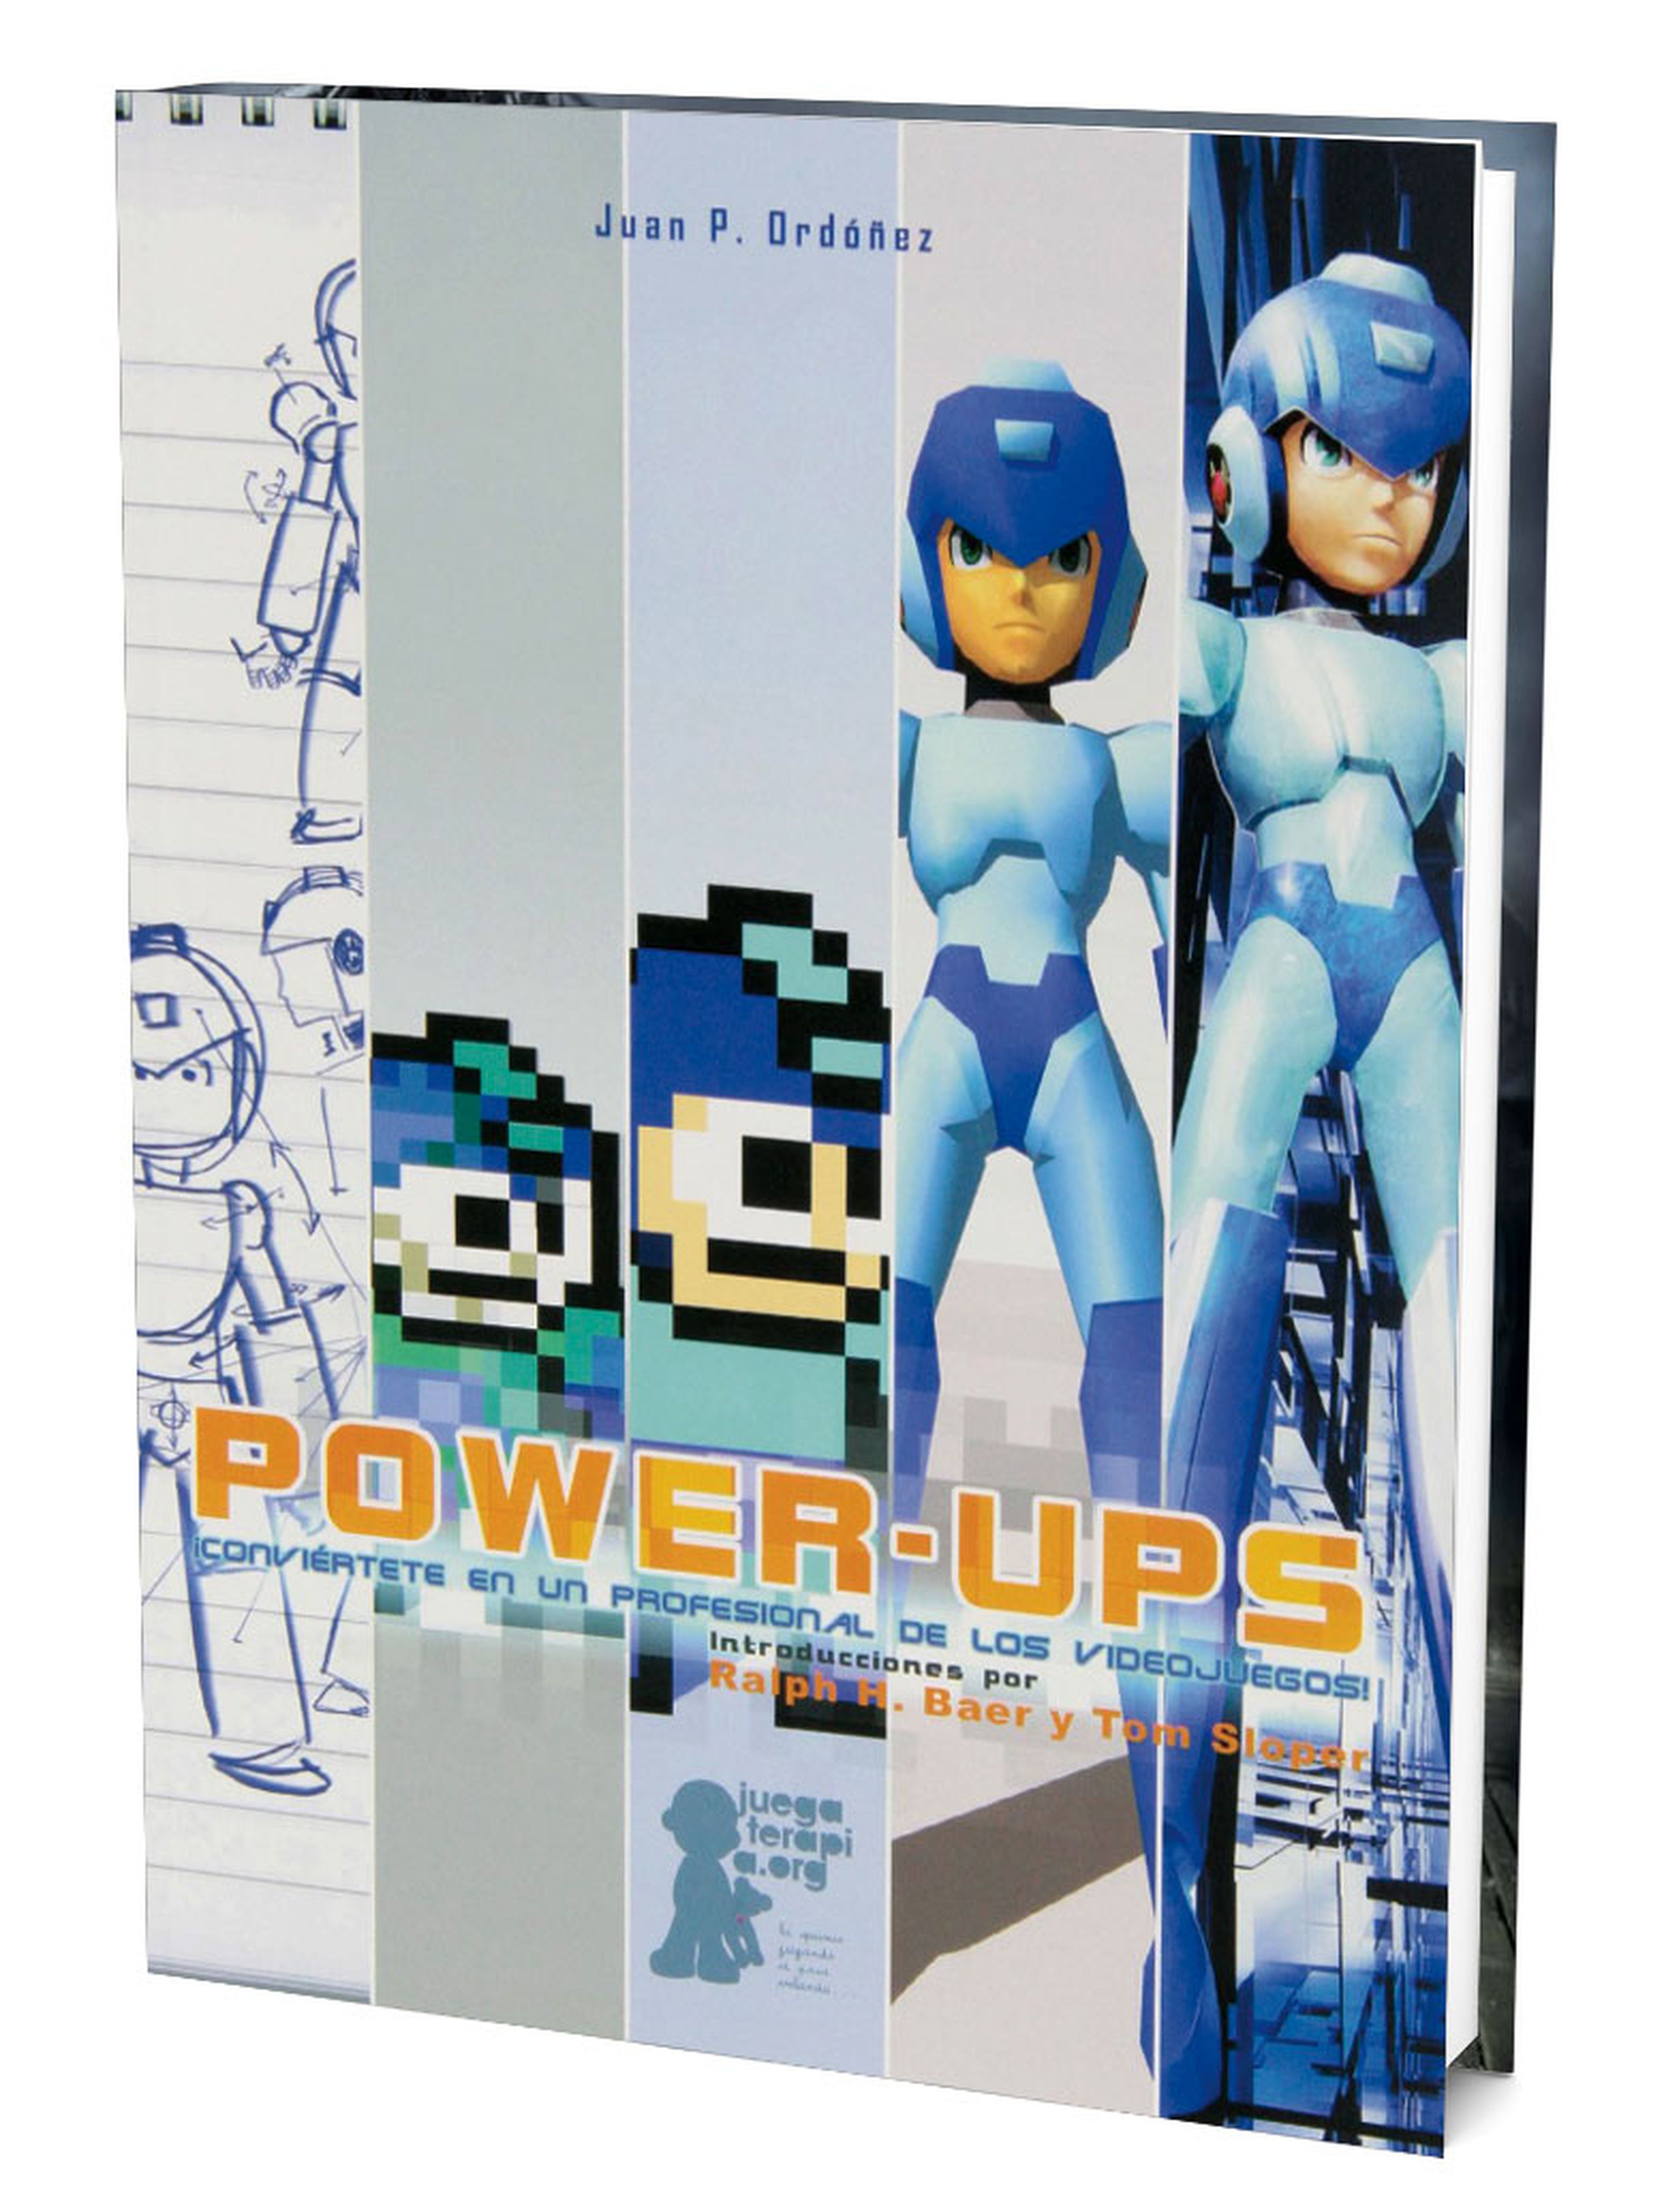 Power-Ups: un libro para futuros profesionales del videojuego